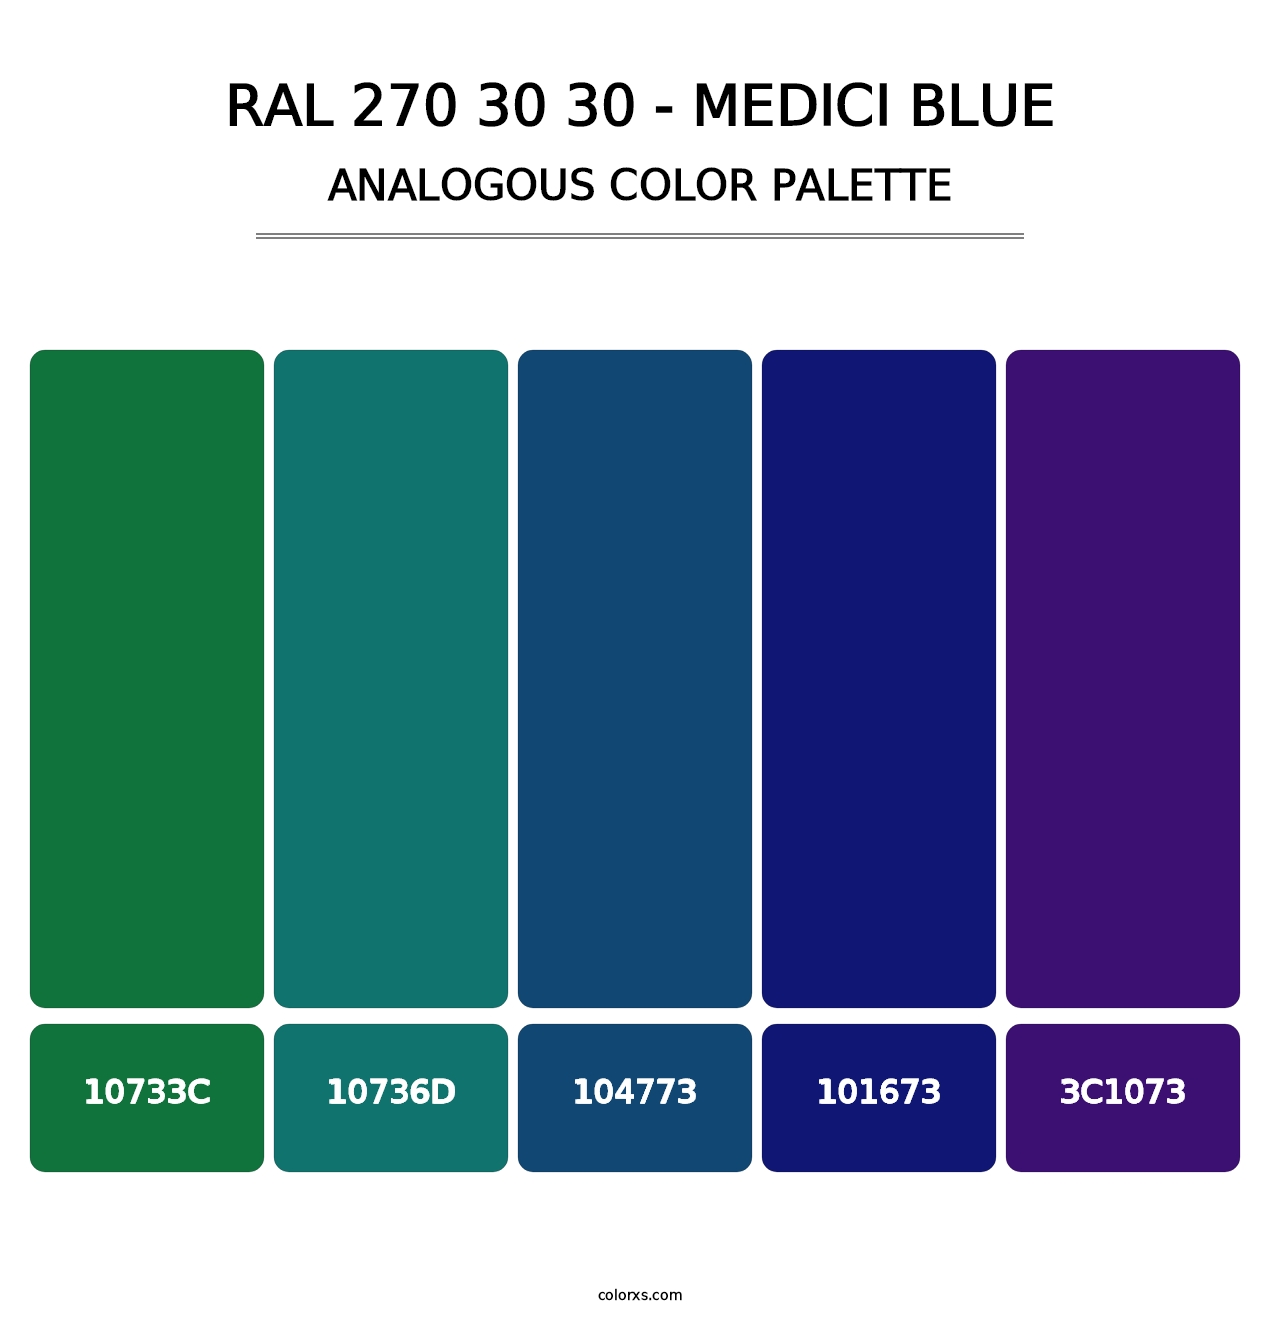 RAL 270 30 30 - Medici Blue - Analogous Color Palette